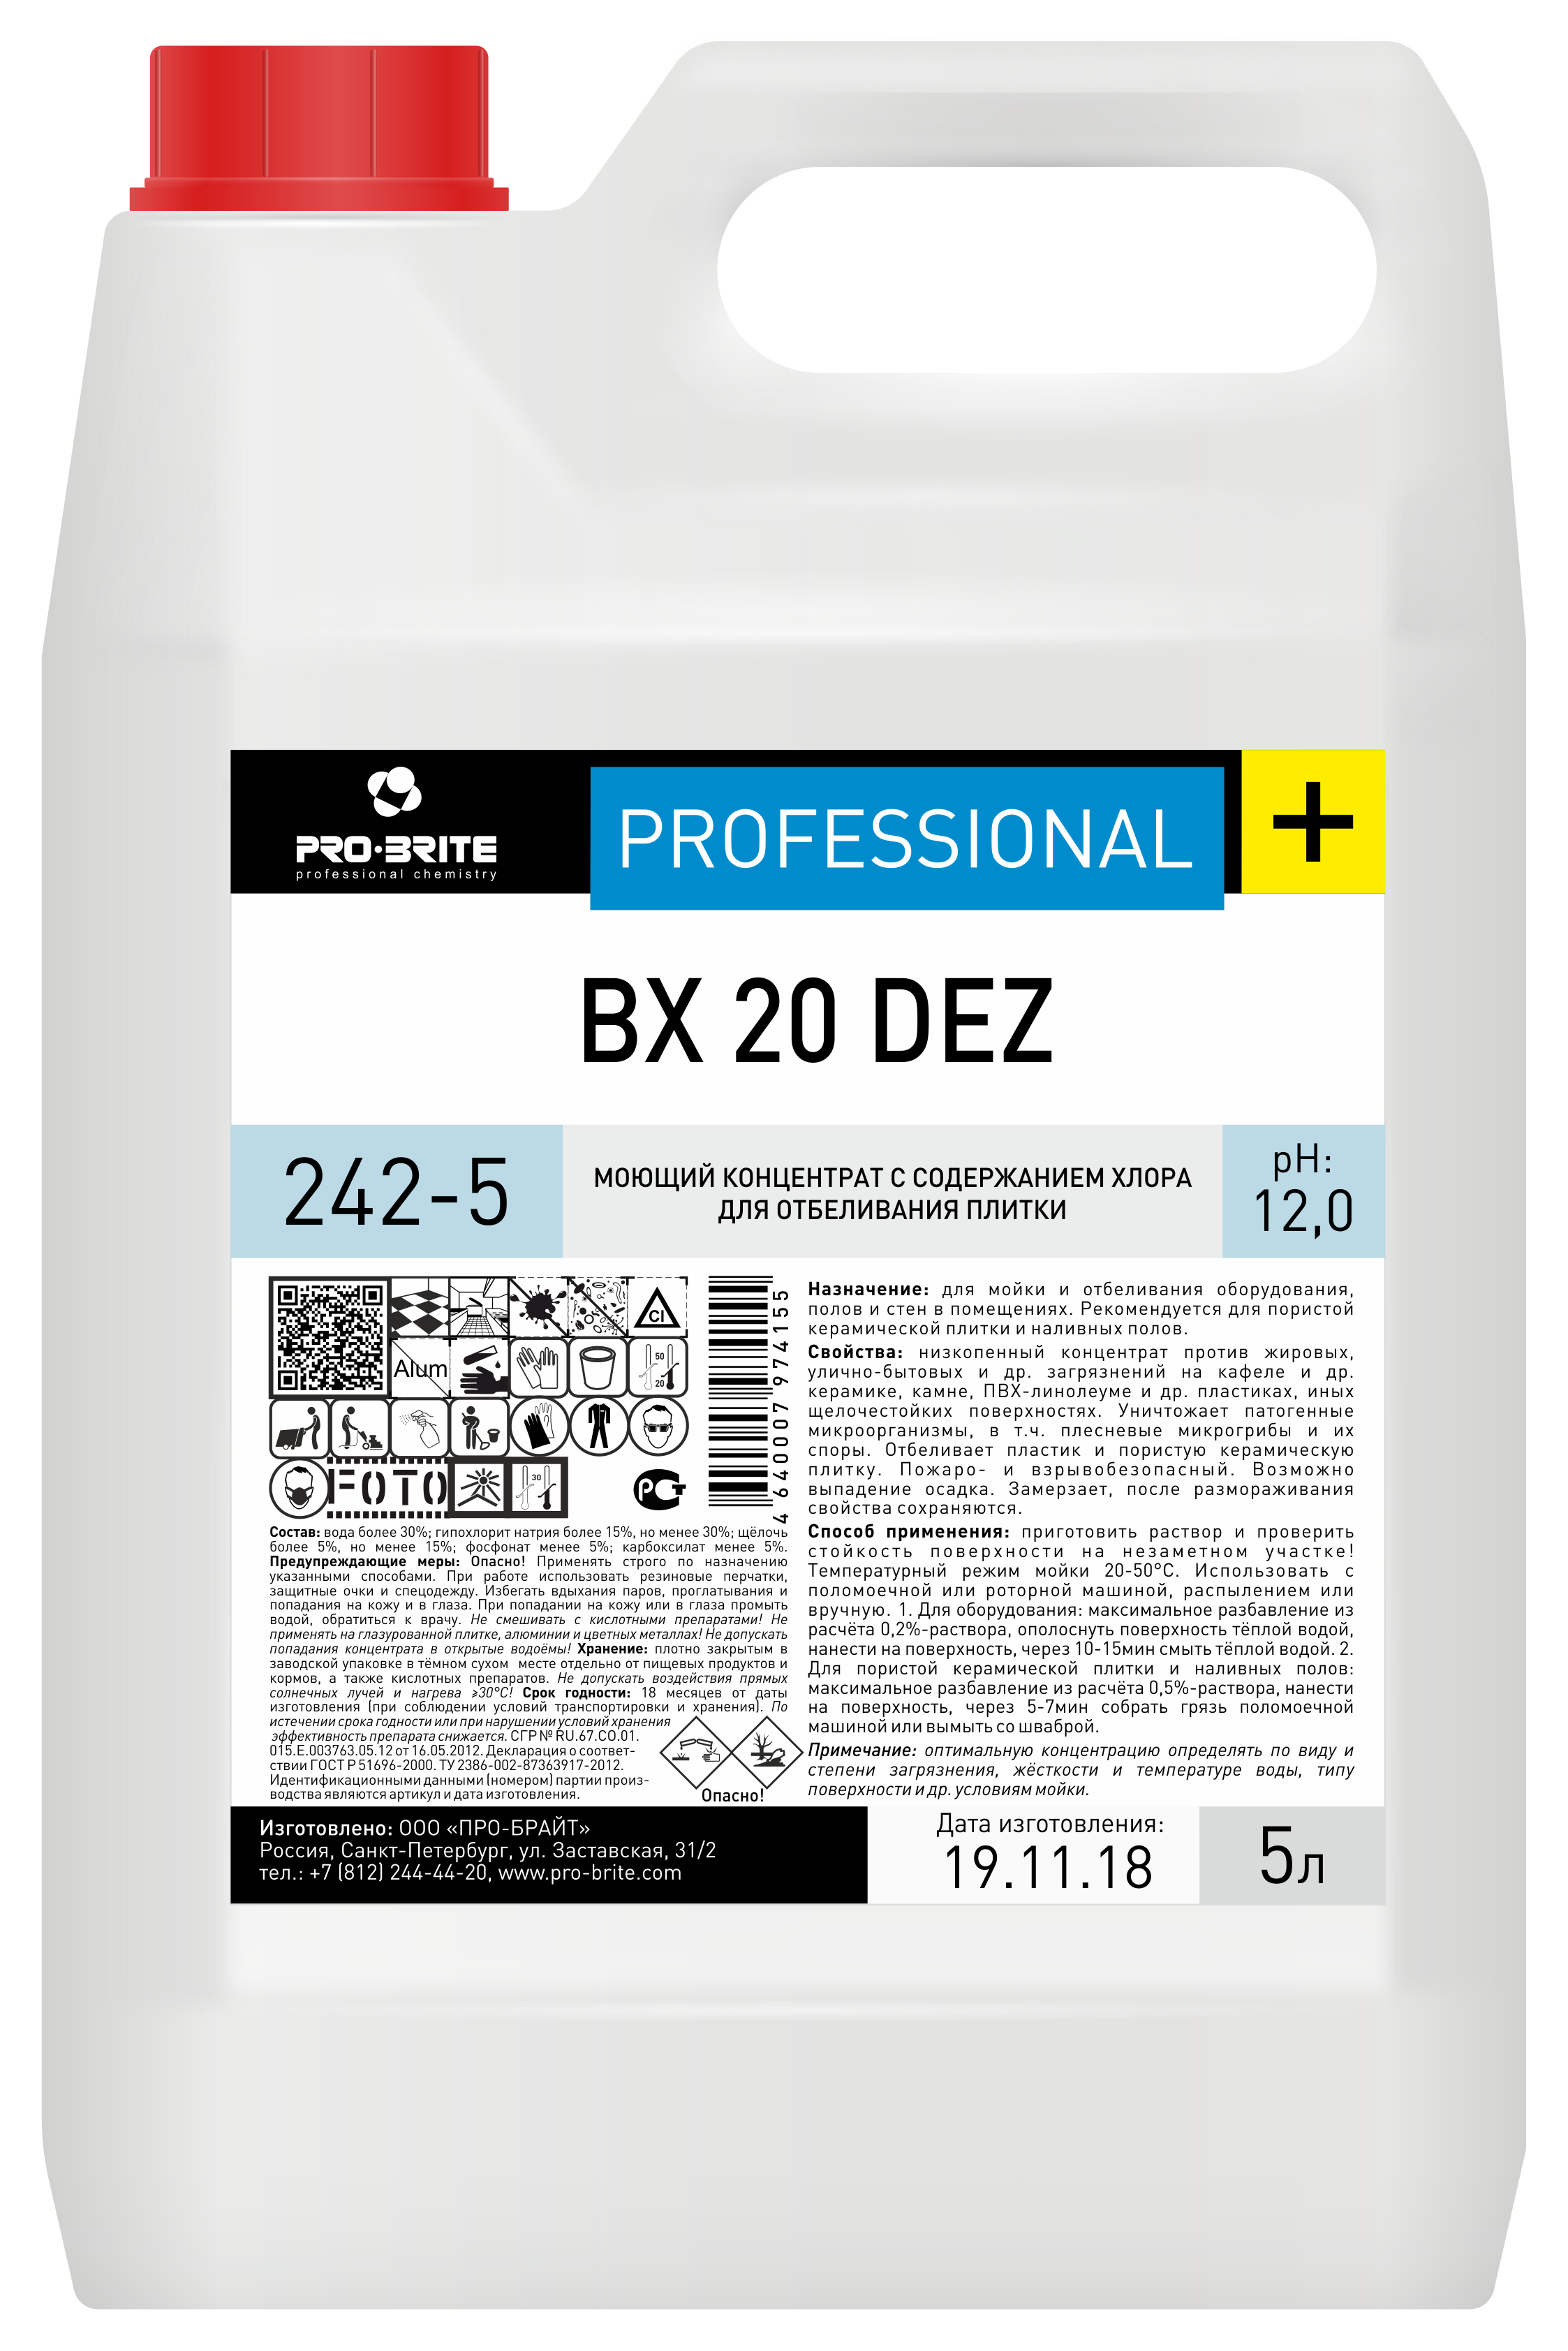 BX 20 DEZ (Б ИКС 20 ДЕЗ) 5 л. Моющий концентрат с содержанием хлора для отбеливания плитки. PRO-BRITE